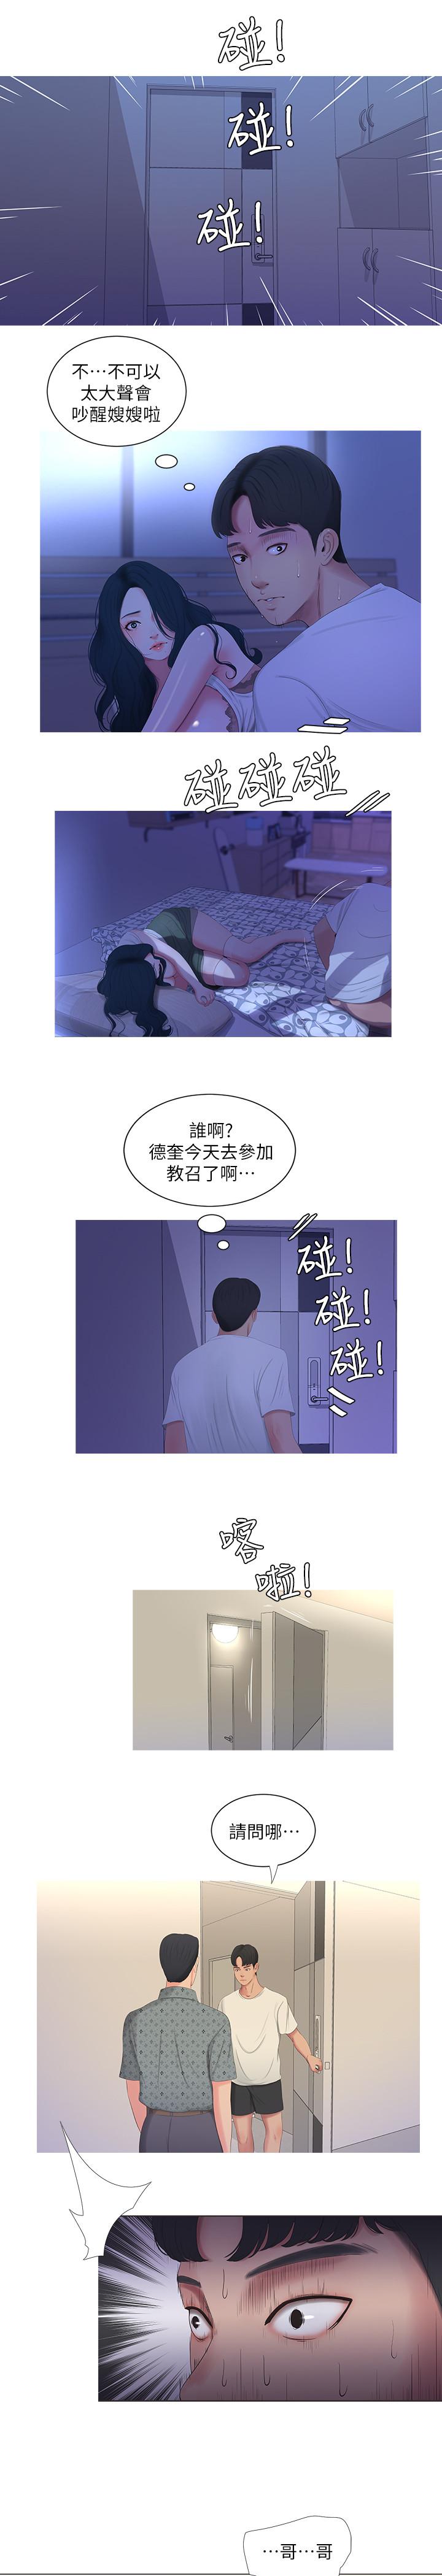 韩国污漫画 親傢四姊妹 第11话-酥麻的余韵 1